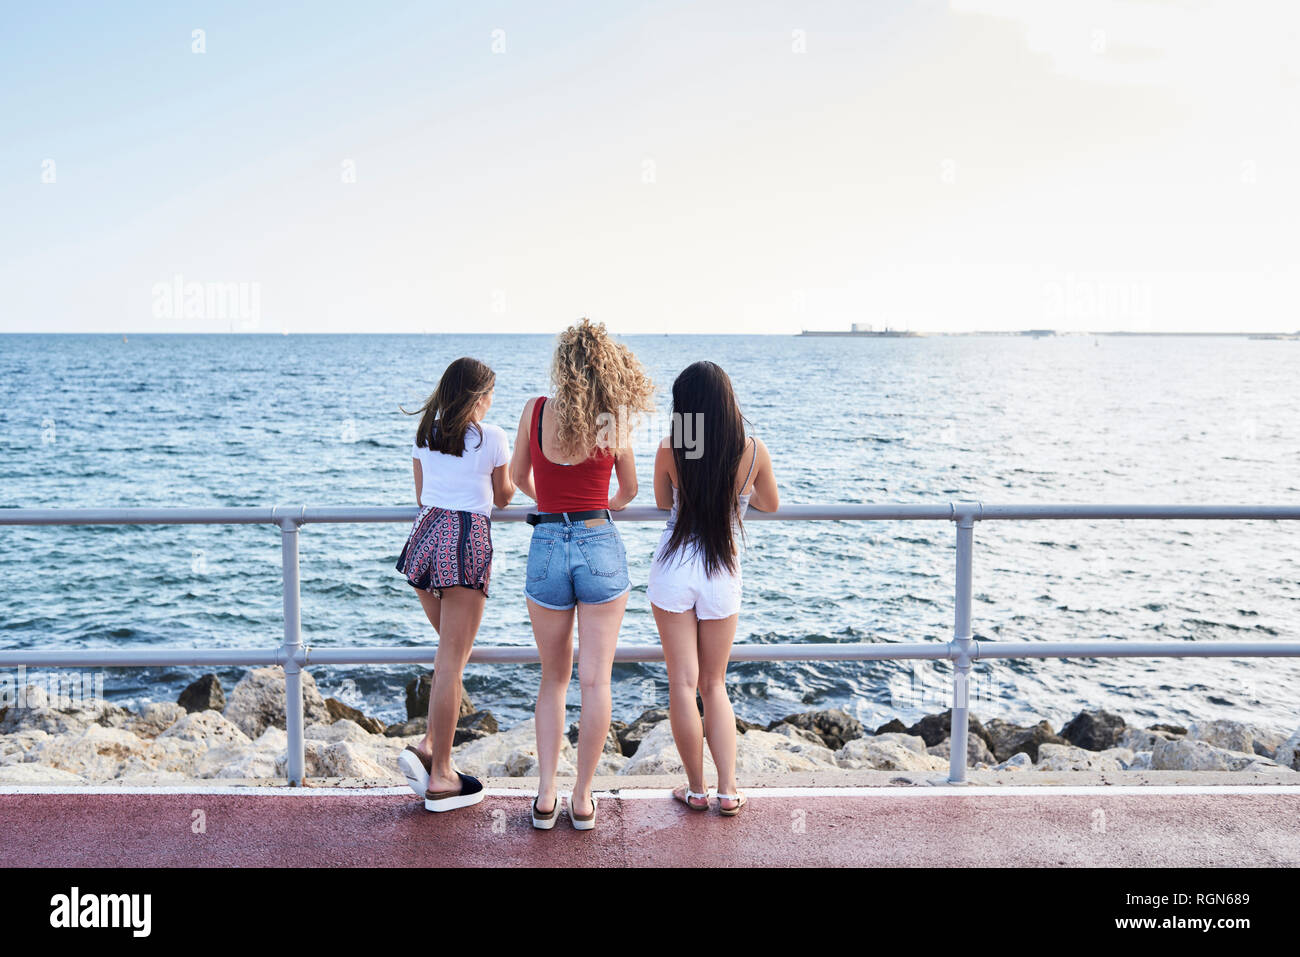 Spanien, Mallorca, Palma, Rückansicht von drei jungen Frauen am Meer stehend Stockfoto